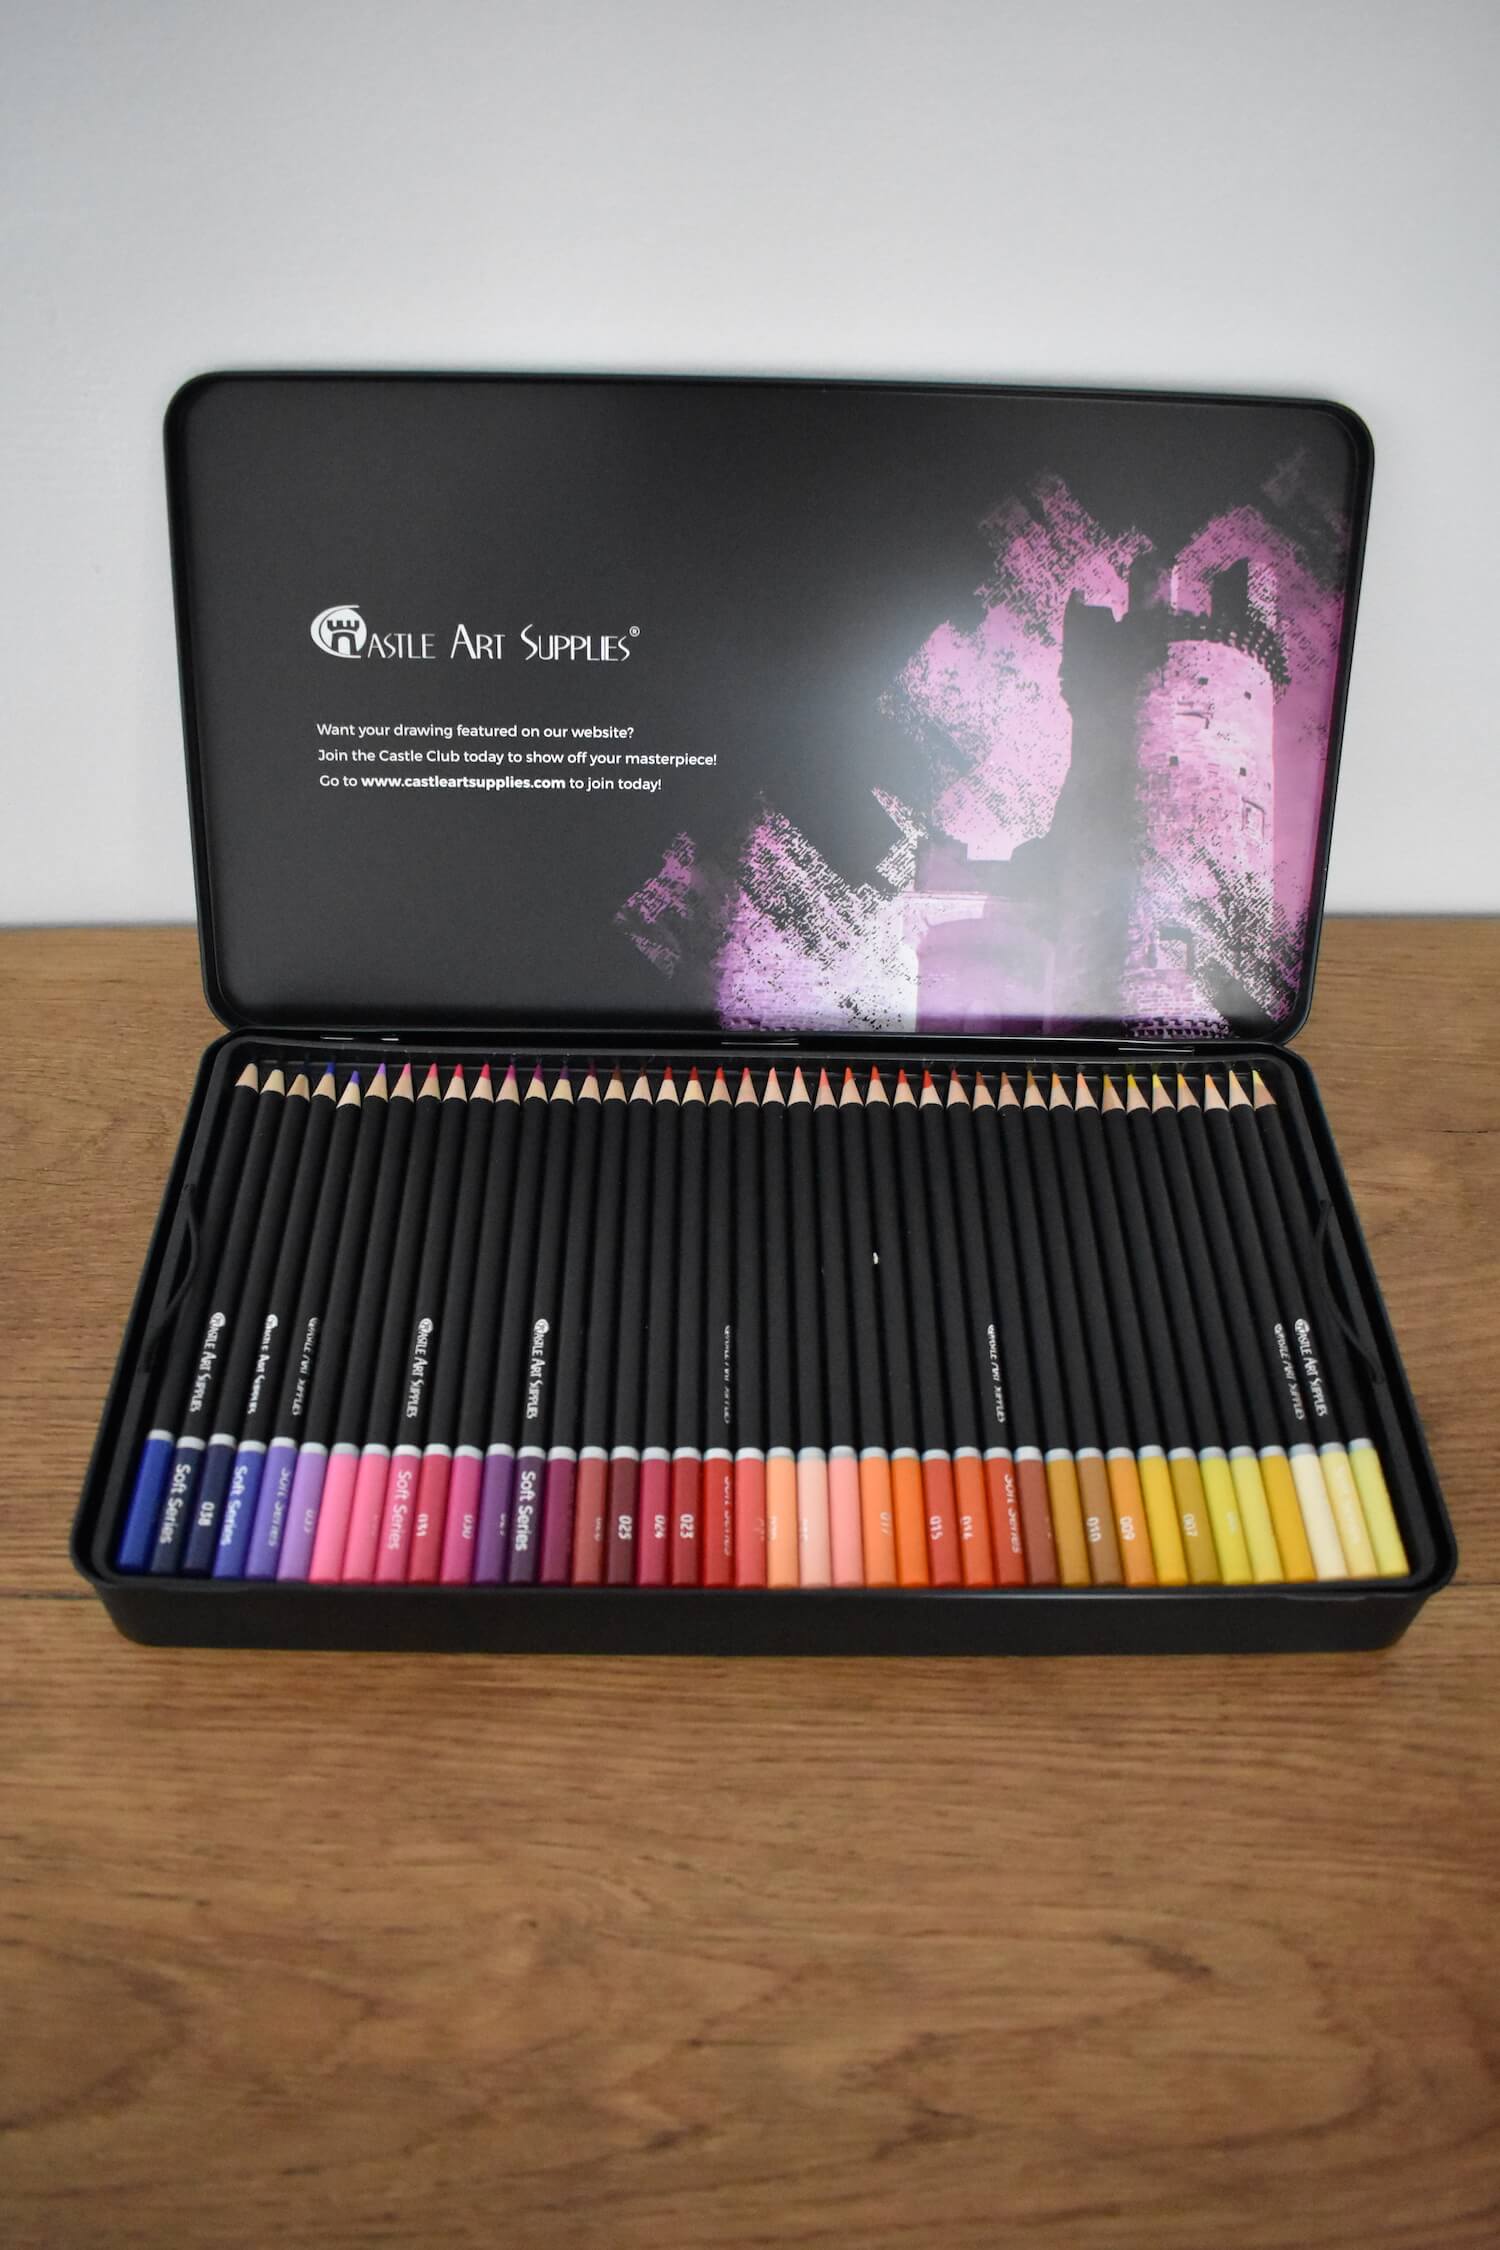 Crayons de haute qualité avec des nuances douces pour un résultat magnifique Boîte métallique de 24 crayons de couleur sur le thème de Castle Arts idéale pour l'art Paysage